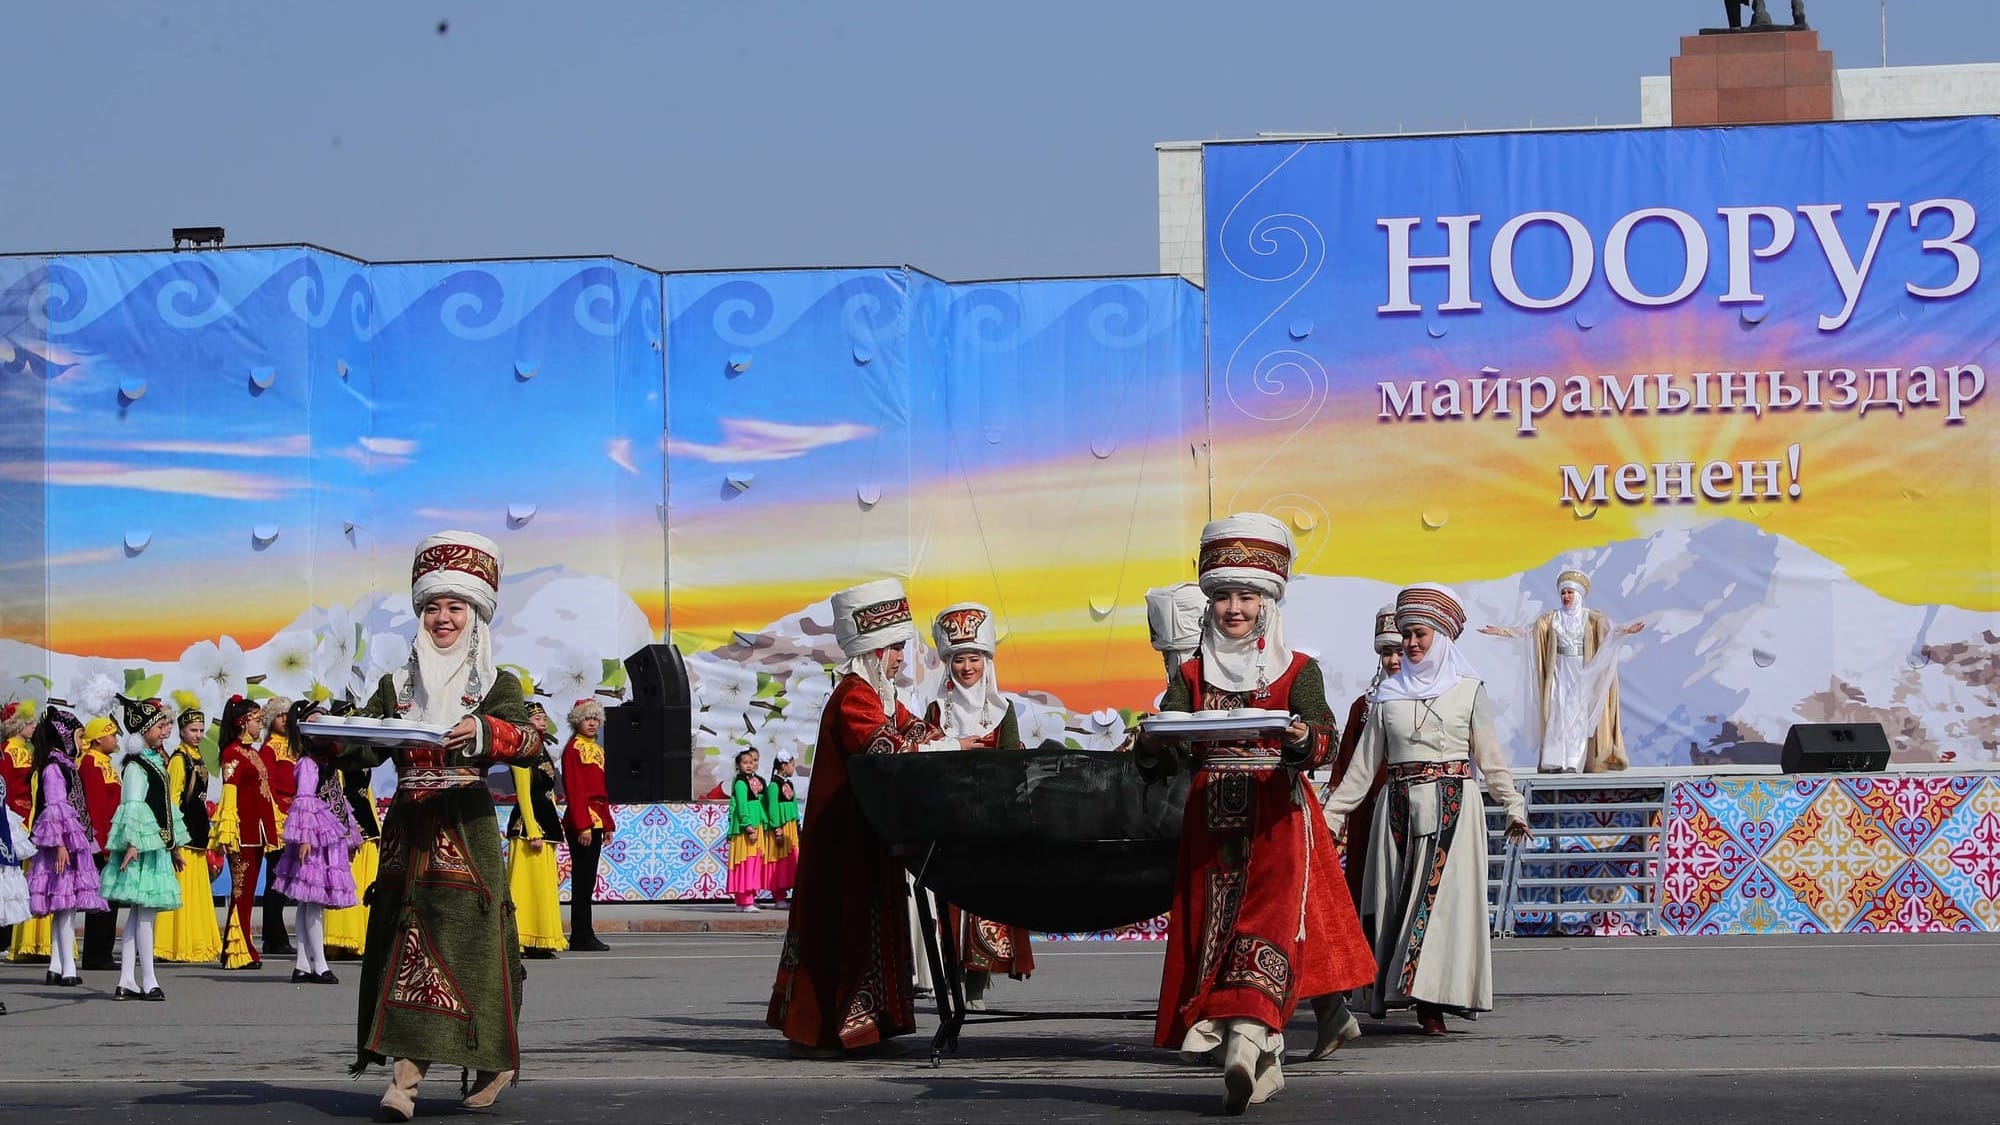 Мэрия Бишкека направит 11.5 млн сомов на праздничное оформление города